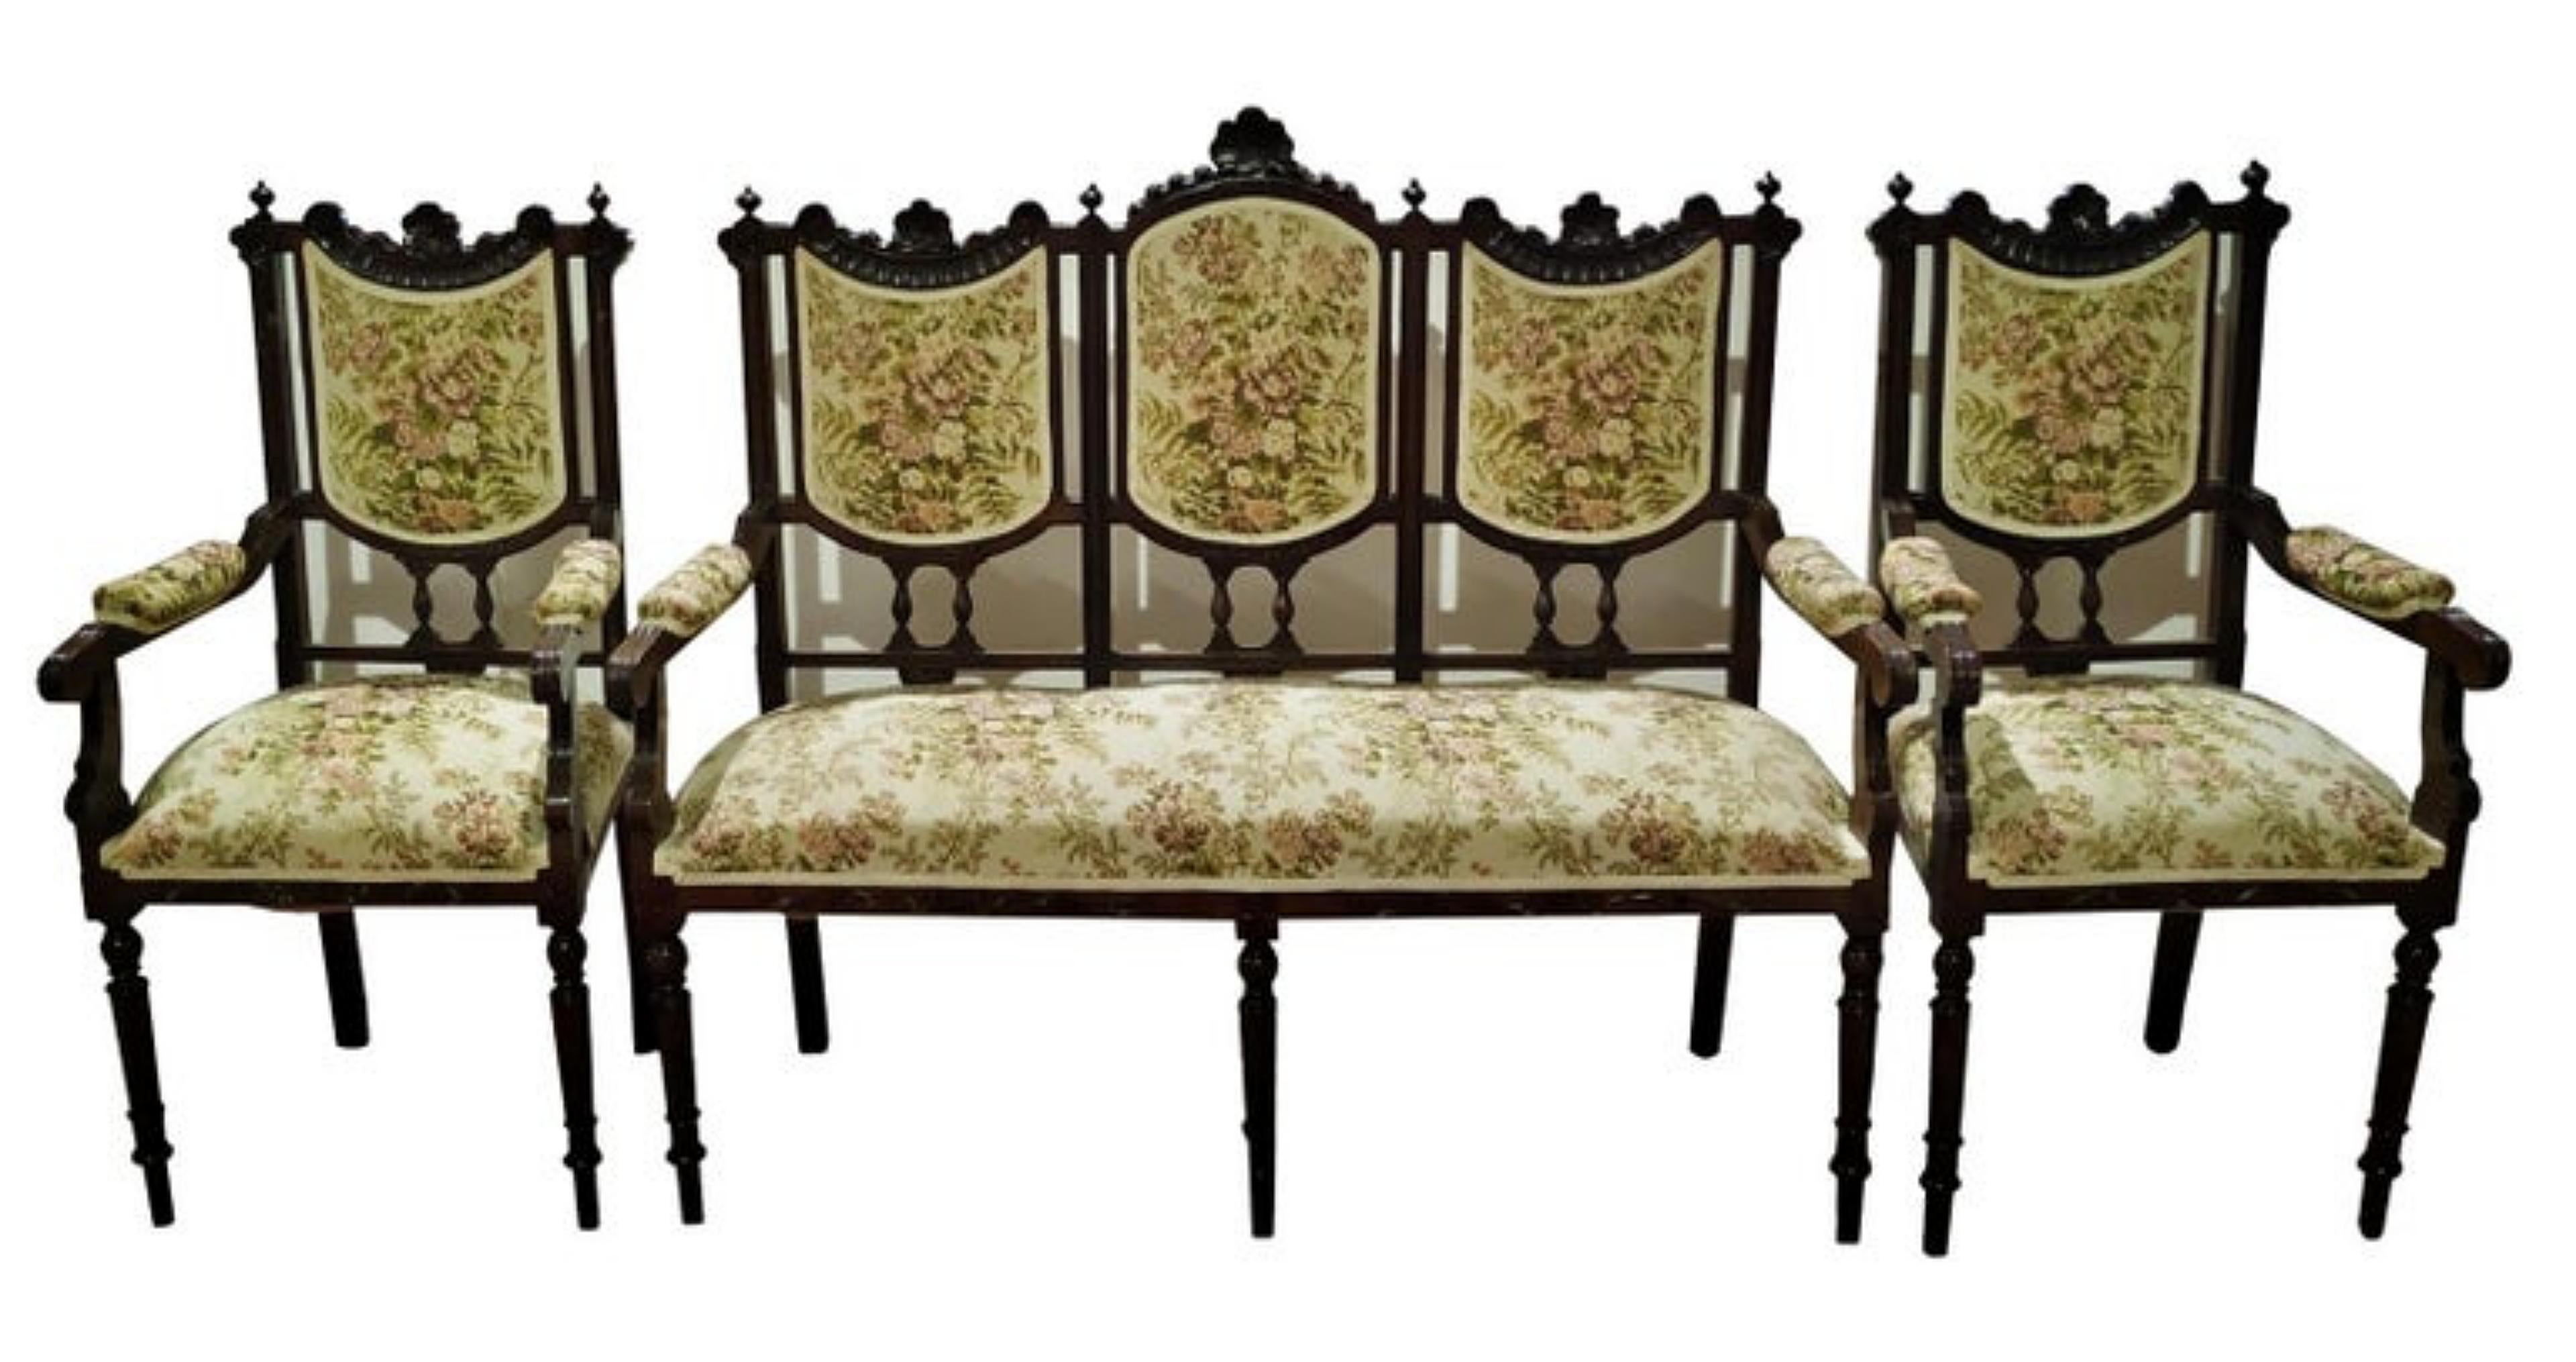 Set aus Canape und zwei Sesseln

Portugiesisch 19. Jahrhundert
aus Mahagoniholz mit Schnitzereien.
Polster. Gebrauchsspuren.
Maße: (Kanapee) 113 x 124 x 48,5 cm;
(Sessel) 103 x 51 x 45 cm.
guter Zustand.